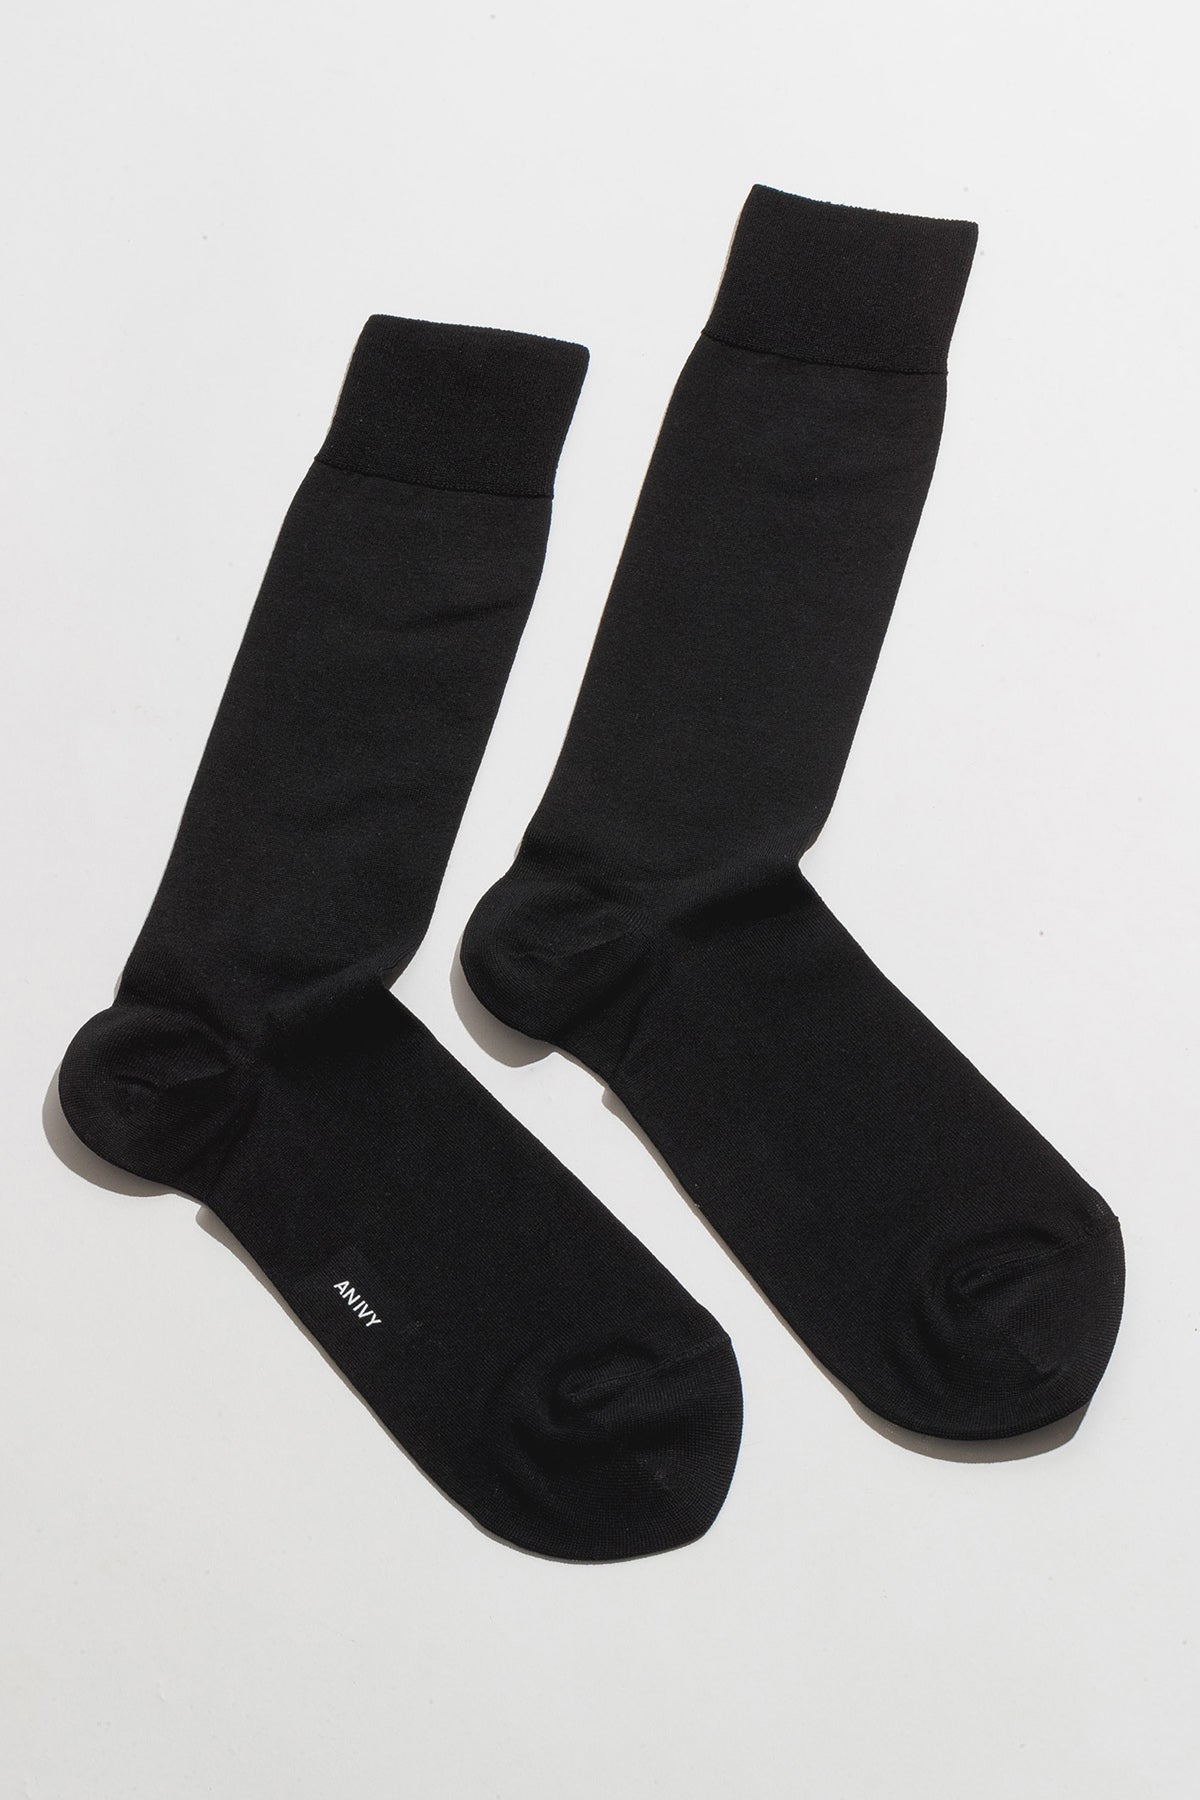 AN IVY Sokker Plain Black Socks